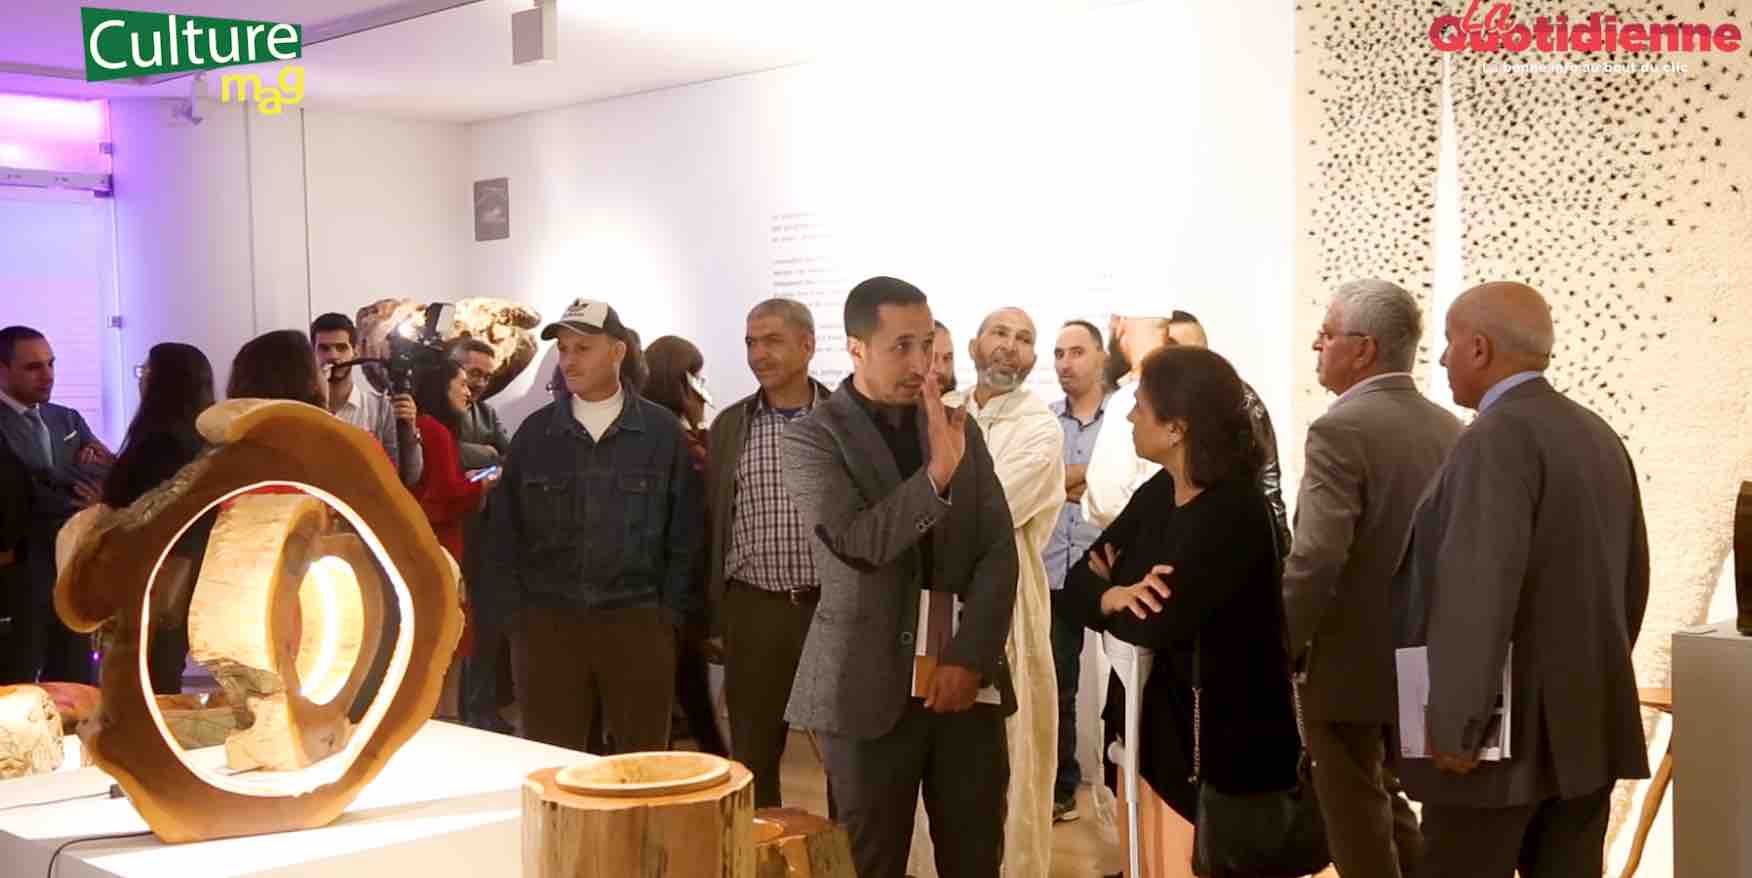 Galerie Banque Populaire : Design et artisanat, les promesses d'une rencontre